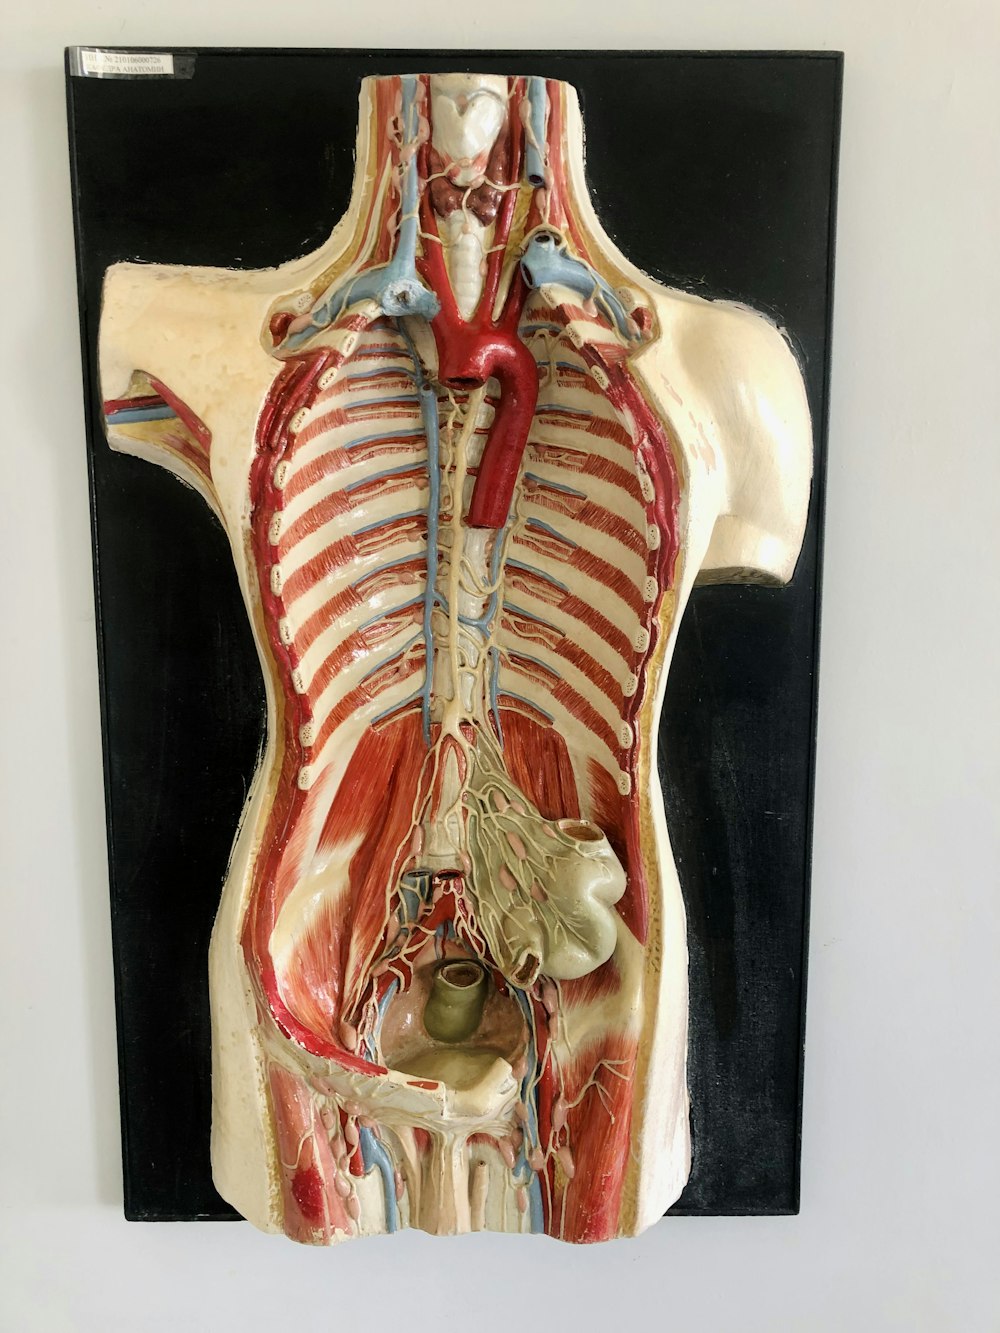 Ein medizinisches Modell der Rückseite eines menschlichen Körpers